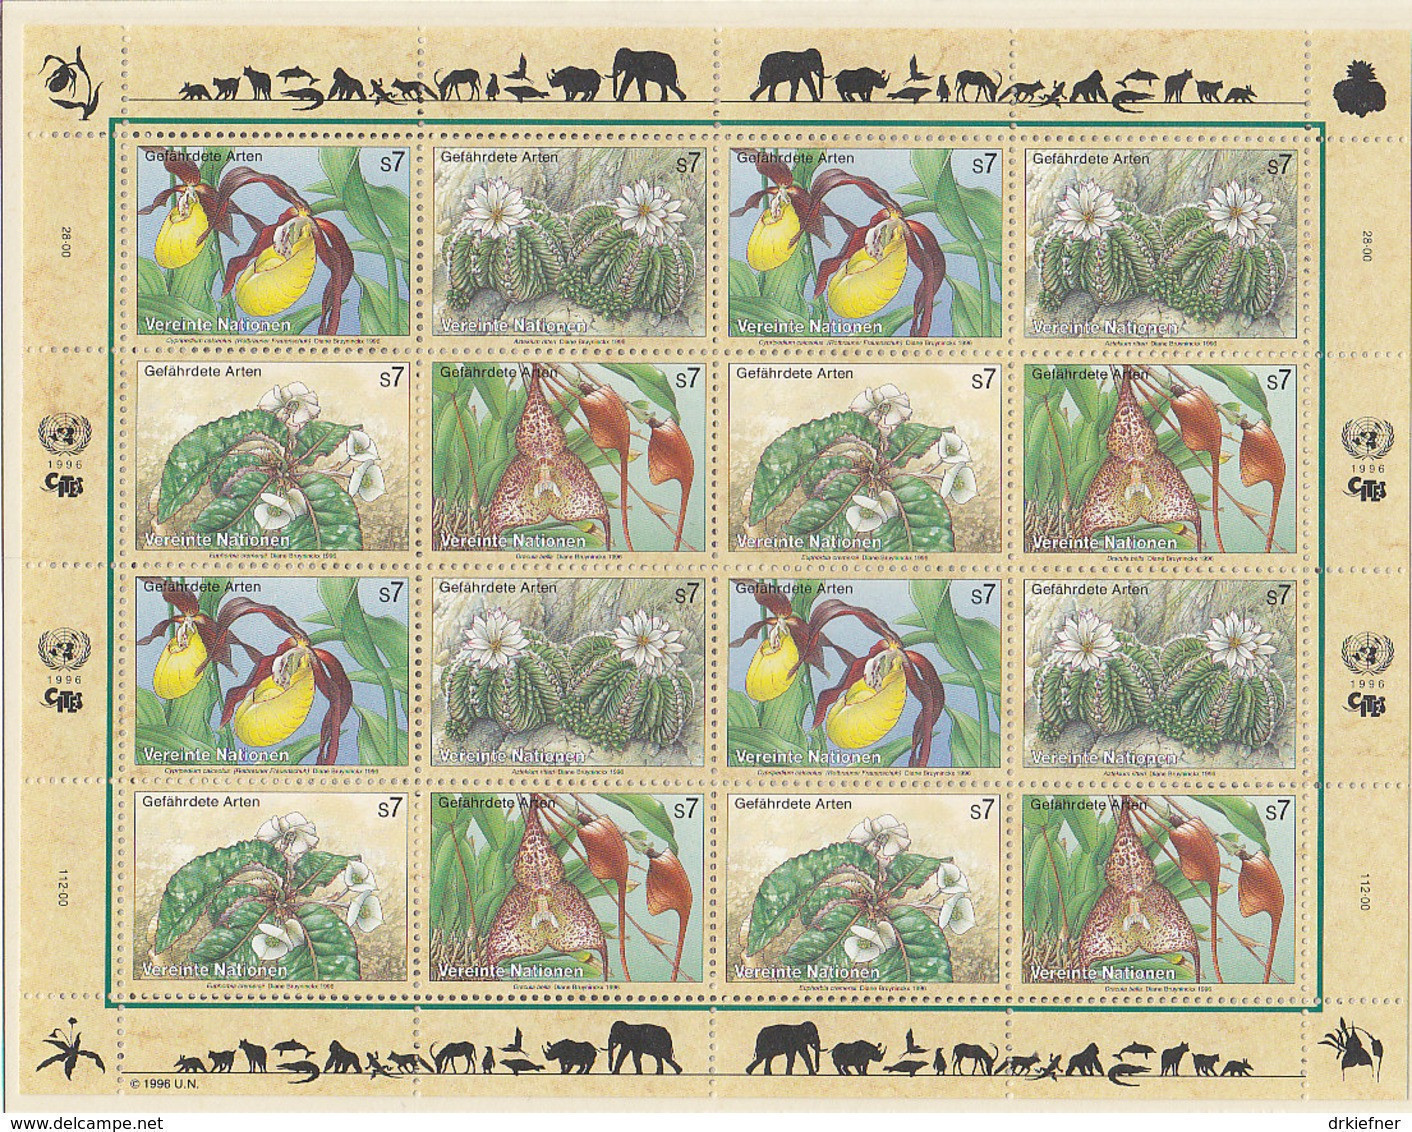 UNO WIEN 205-208, Kleinbogen, Postfrisch**, Gefährdete Arten 1996 - Blocks & Sheetlets